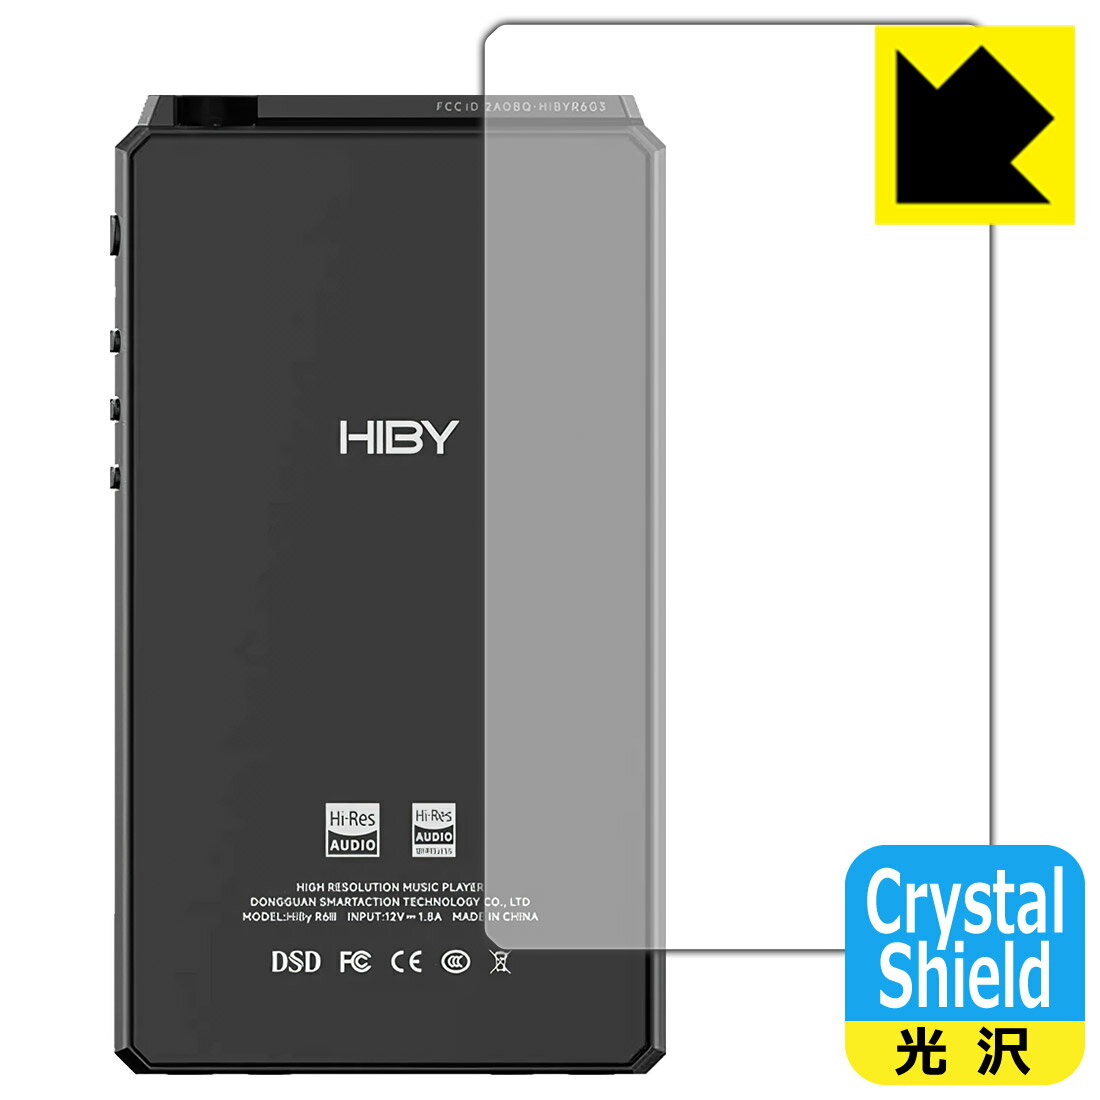 ●対応機種 : HiBy Music HiBy R6 III (Gen 3)専用の商品です。●製品内容 : 背面用フィルム3枚・クリーニングワイプ1個●※この機器は周辺部が曲面となったラウンド仕様のため、保護フィルムを端まで貼ることができません。●「Crystal Shield」は高い透明度と光沢感で、保護フィルムを貼っていないかのようなクリア感のある『光沢タイプの保護フィルム』●安心の国産素材を使用。日本国内の自社工場で製造し出荷しています。 ★貼り付け失敗交換サービス対象商品★【ポスト投函送料無料】商品は【ポスト投函発送 (追跡可能メール便)】で発送します。お急ぎ、配達日時を指定されたい方は以下のクーポンを同時購入ください。【お急ぎ便クーポン】　プラス110円(税込)で速達扱いでの発送。お届けはポストへの投函となります。【配達日時指定クーポン】　プラス550円(税込)で配達日時を指定し、宅配便で発送させていただきます。【お急ぎ便クーポン】はこちらをクリック【配達日時指定クーポン】はこちらをクリック 　 貼っていることを意識させないほどの高い透明度に、高級感あふれる光沢・クリアな仕上げとなります。 動画視聴や画像編集など、機器本来の発色を重視したい方におすすめです。 ハードコート加工がされており、キズや擦れに強くなっています。簡単にキズがつかず長くご利用いただけます。 表面はフッ素コーティングがされており、皮脂や汚れがつきにくく、また、落ちやすくなっています。 指滑りもなめらかで、快適な使用感です。 油性マジックのインクもはじきますので簡単に拭き取れます。 接着面は気泡の入りにくい特殊な自己吸着タイプです。素材に柔軟性があり、貼り付け作業も簡単にできます。また、はがすときにガラス製フィルムのように割れてしまうことはありません。 貼り直しが何度でもできるので、正しい位置へ貼り付けられるまでやり直すことができます。 抗菌加工によりフィルム表面の菌の繁殖を抑えることができます。清潔な画面を保ちたい方におすすめです。 ※抗菌率99.9％ / JIS Z2801 抗菌性試験方法による評価 高級グレードの国産素材を日本国内の弊社工場で加工している完全な Made in Japan です。安心の品質をお届けします。 使用上の注意 ●本製品は機器の画面をキズなどから保護するフィルムです。他の目的にはご使用にならないでください。 ●本製品は液晶保護および機器本体を完全に保護することを保証するものではありません。機器の破損、損傷、故障、その他損害につきましては一切の責任を負いかねます。 ●製品の性質上、画面操作の反応が変化したり、表示等が変化して見える場合がございます。 ●貼り付け作業時の失敗(位置ズレ、汚れ、ゆがみ、折れ、気泡など)および取り外し作業時の破損、損傷などについては、一切の責任を負いかねます。 ●水に濡れた状態でのご使用は吸着力の低下などにより、保護フィルムがはがれてしまう場合がございます。防水対応の機器でご使用の場合はご注意ください。 ●アルコール類やその他薬剤を本製品に付着させないでください。表面のコーティングや吸着面が変質するおそれがあります。 ●品質向上のため、仕様などを予告なく変更する場合がございますので、予めご了承ください。 ・注意事項：モニターの発色具合により色合いが異なる場合がございます。